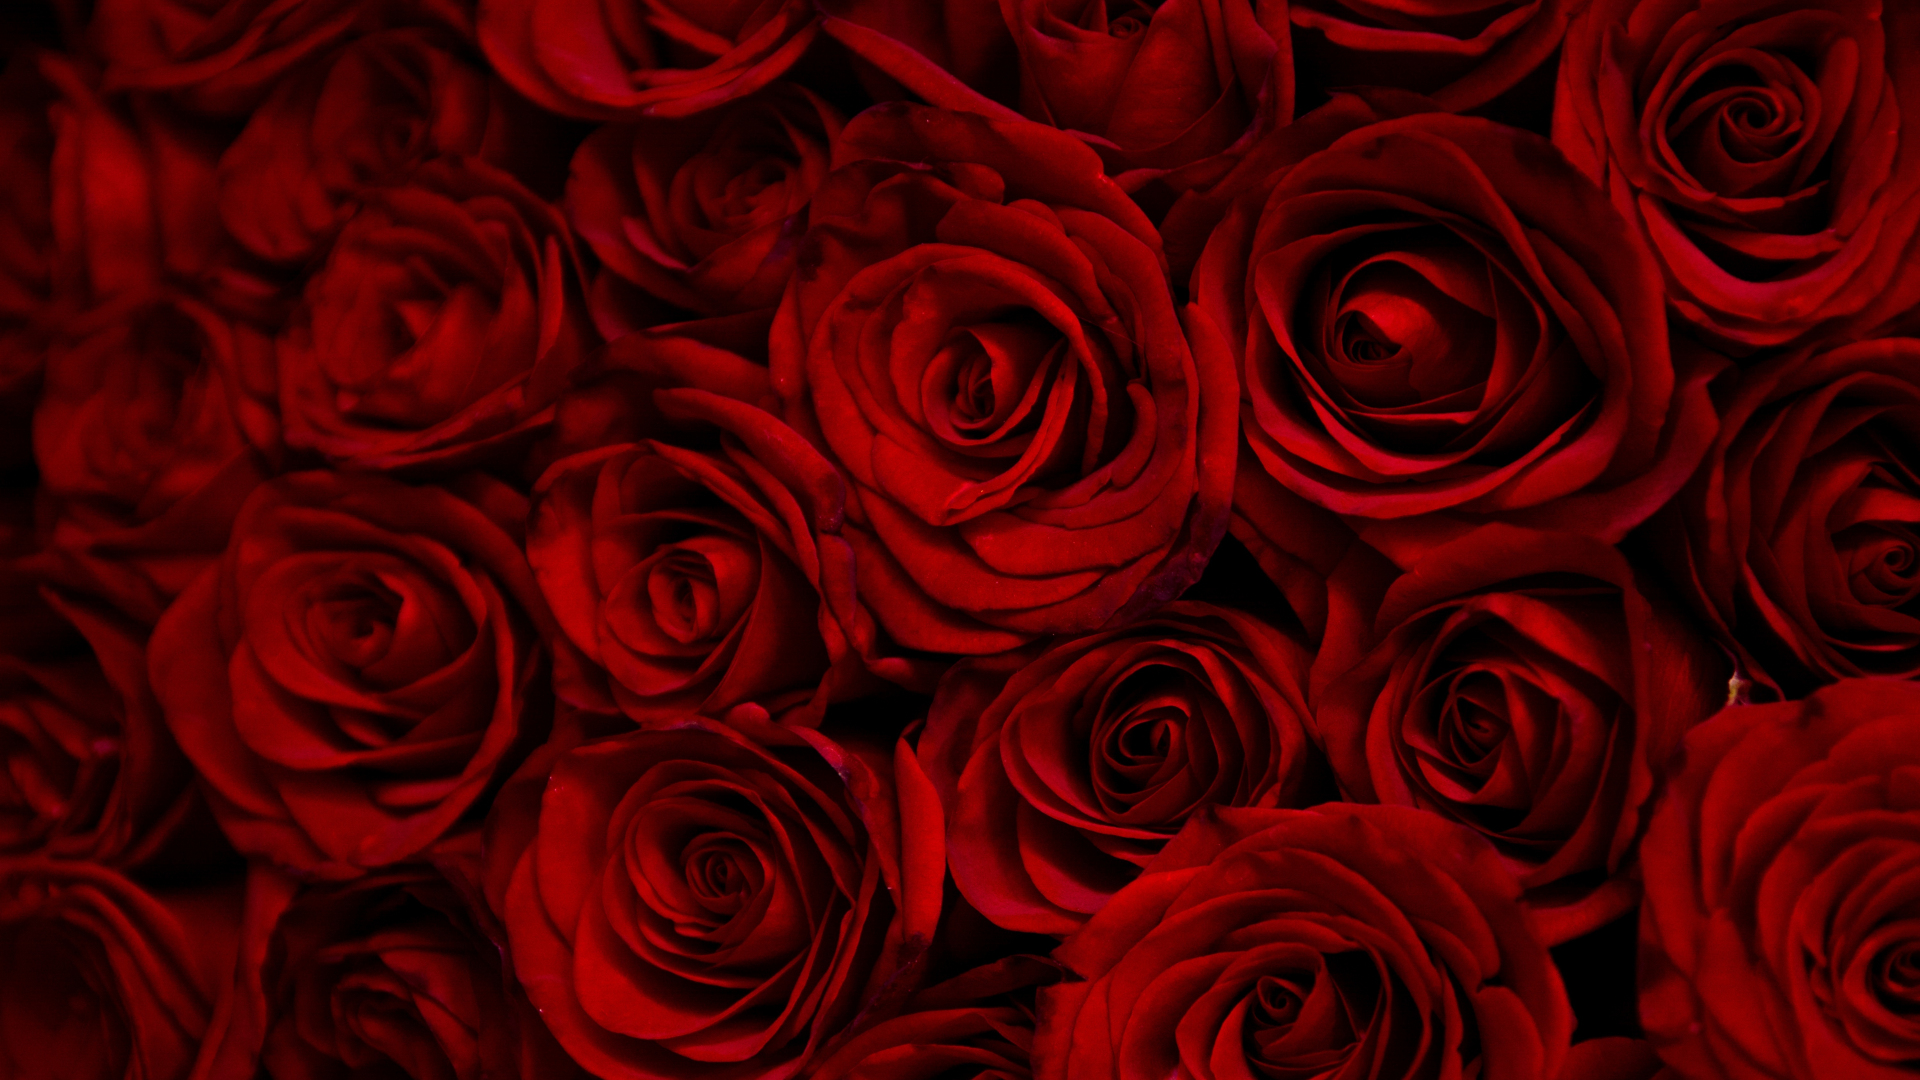 50+] Most Beautiful Rose Flowers Wallpapers - WallpaperSafari